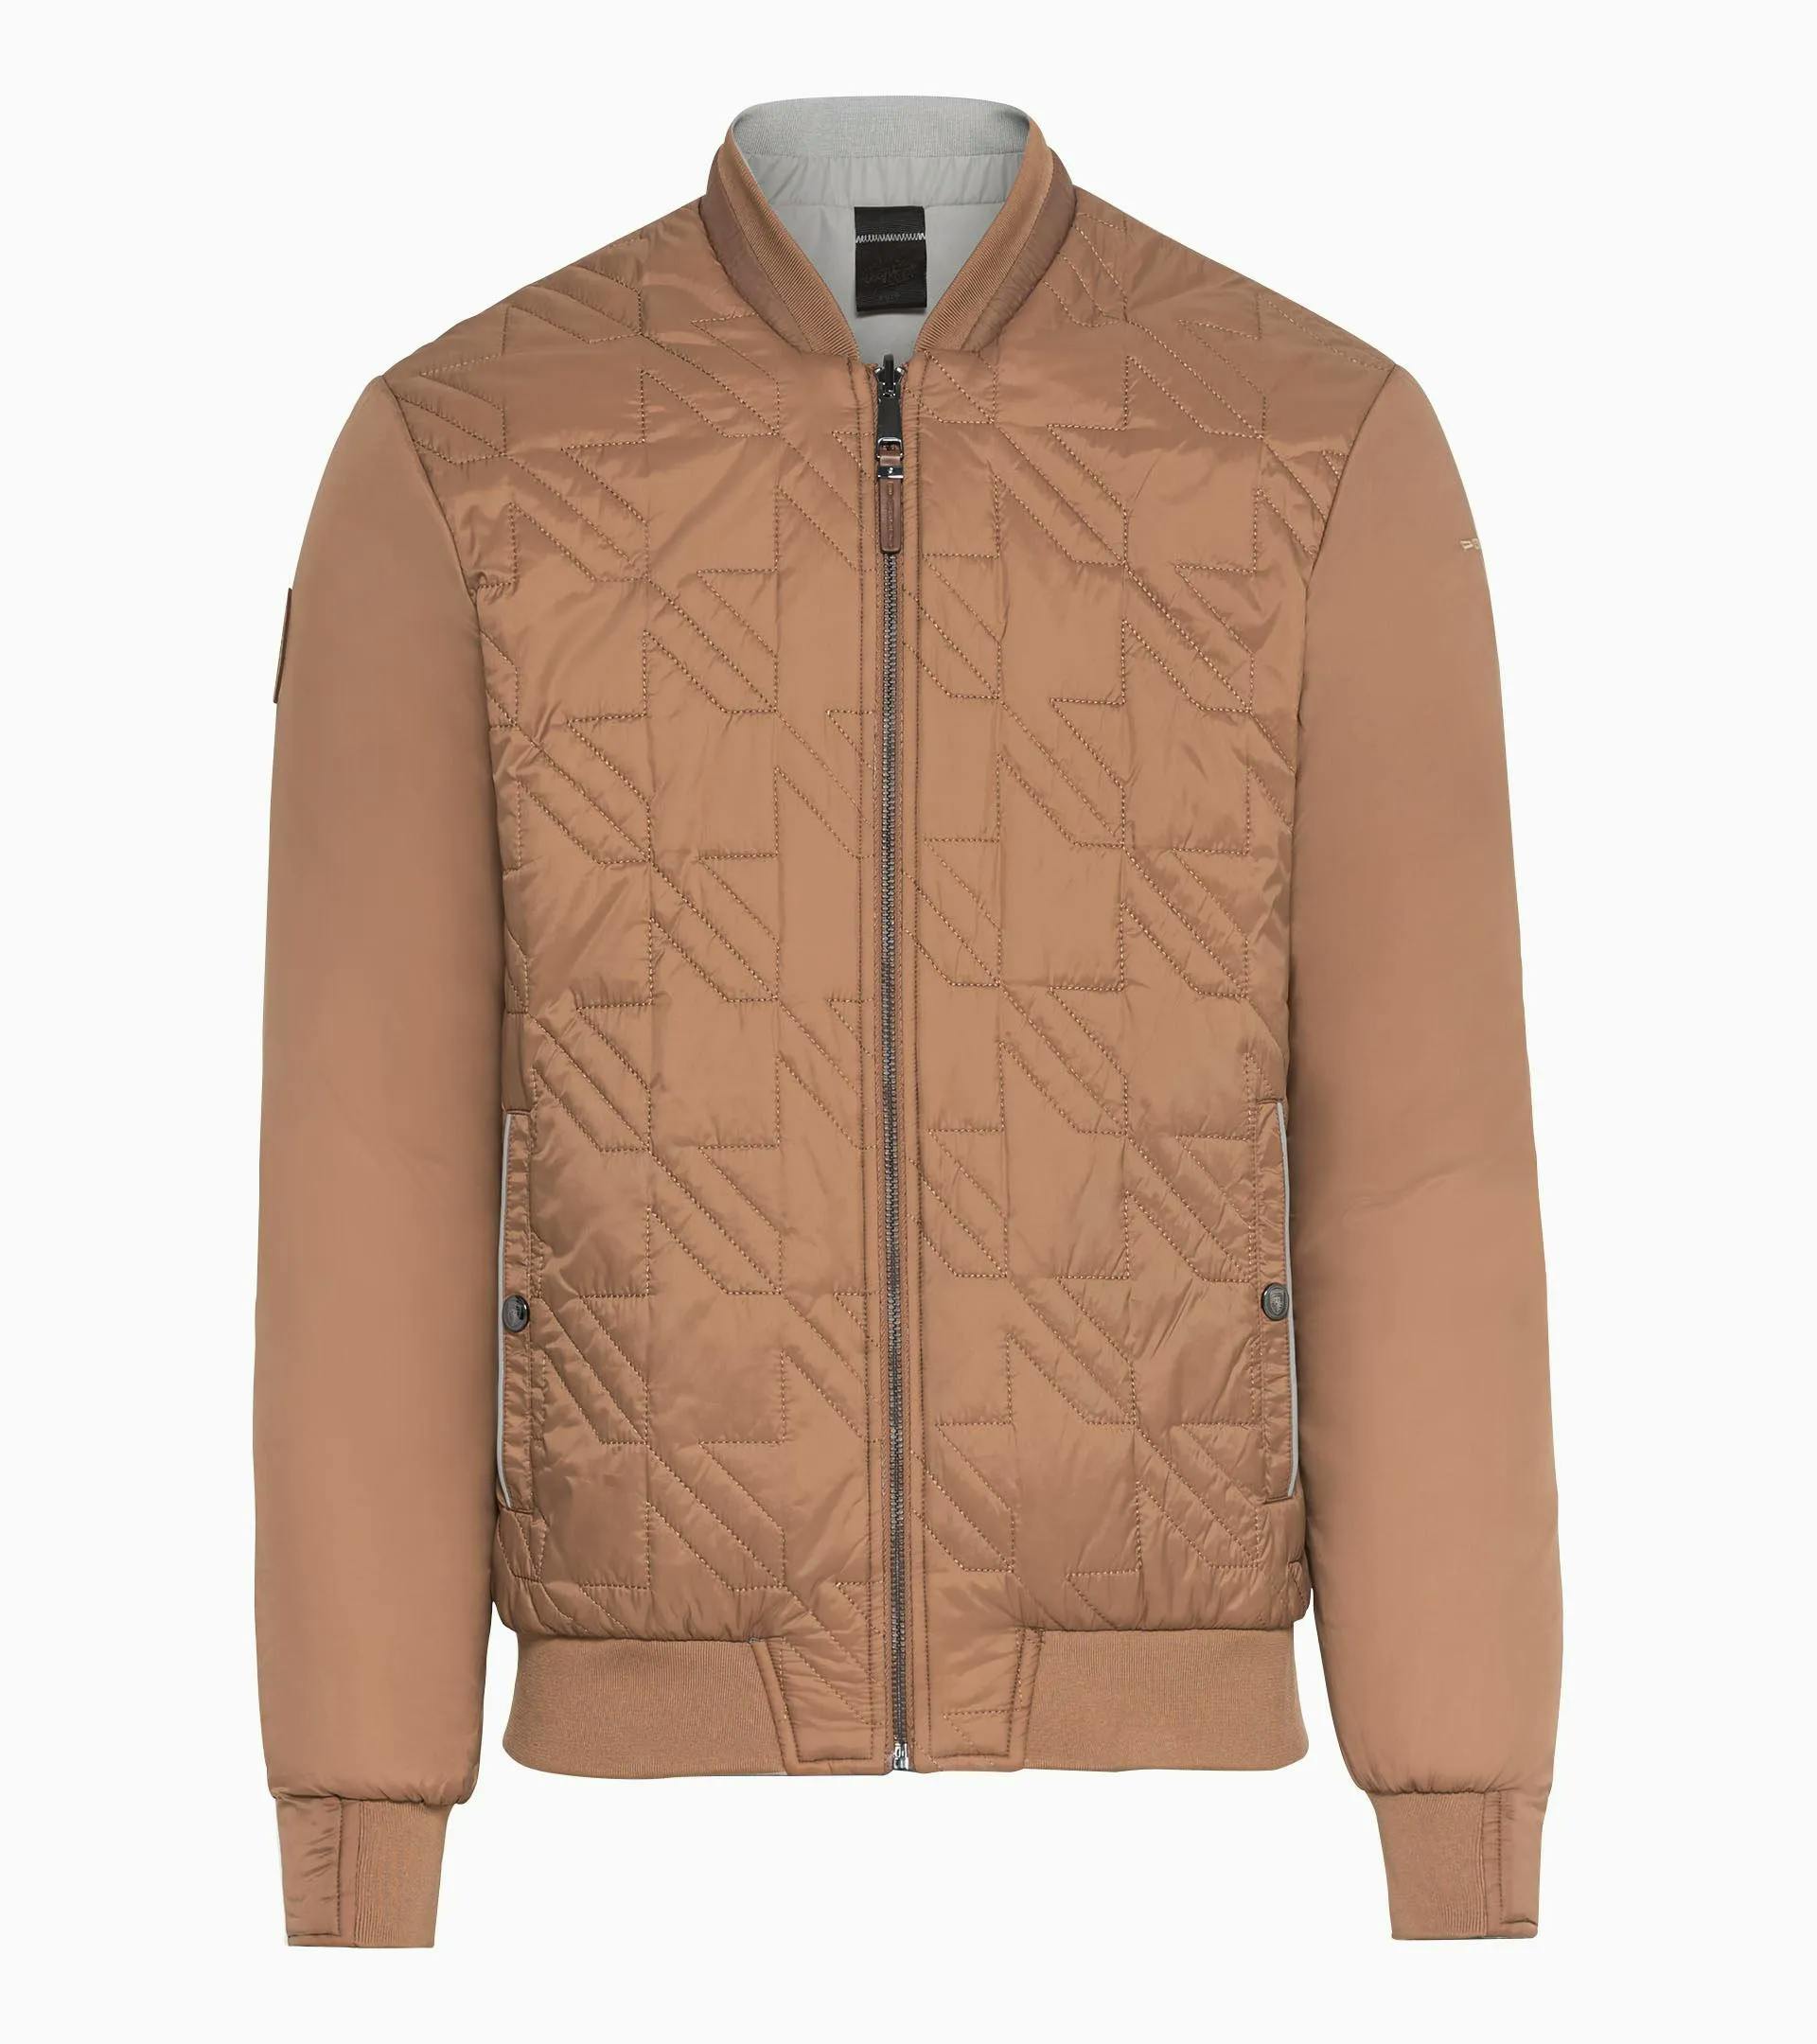 Revesible jacket – Heritage 2